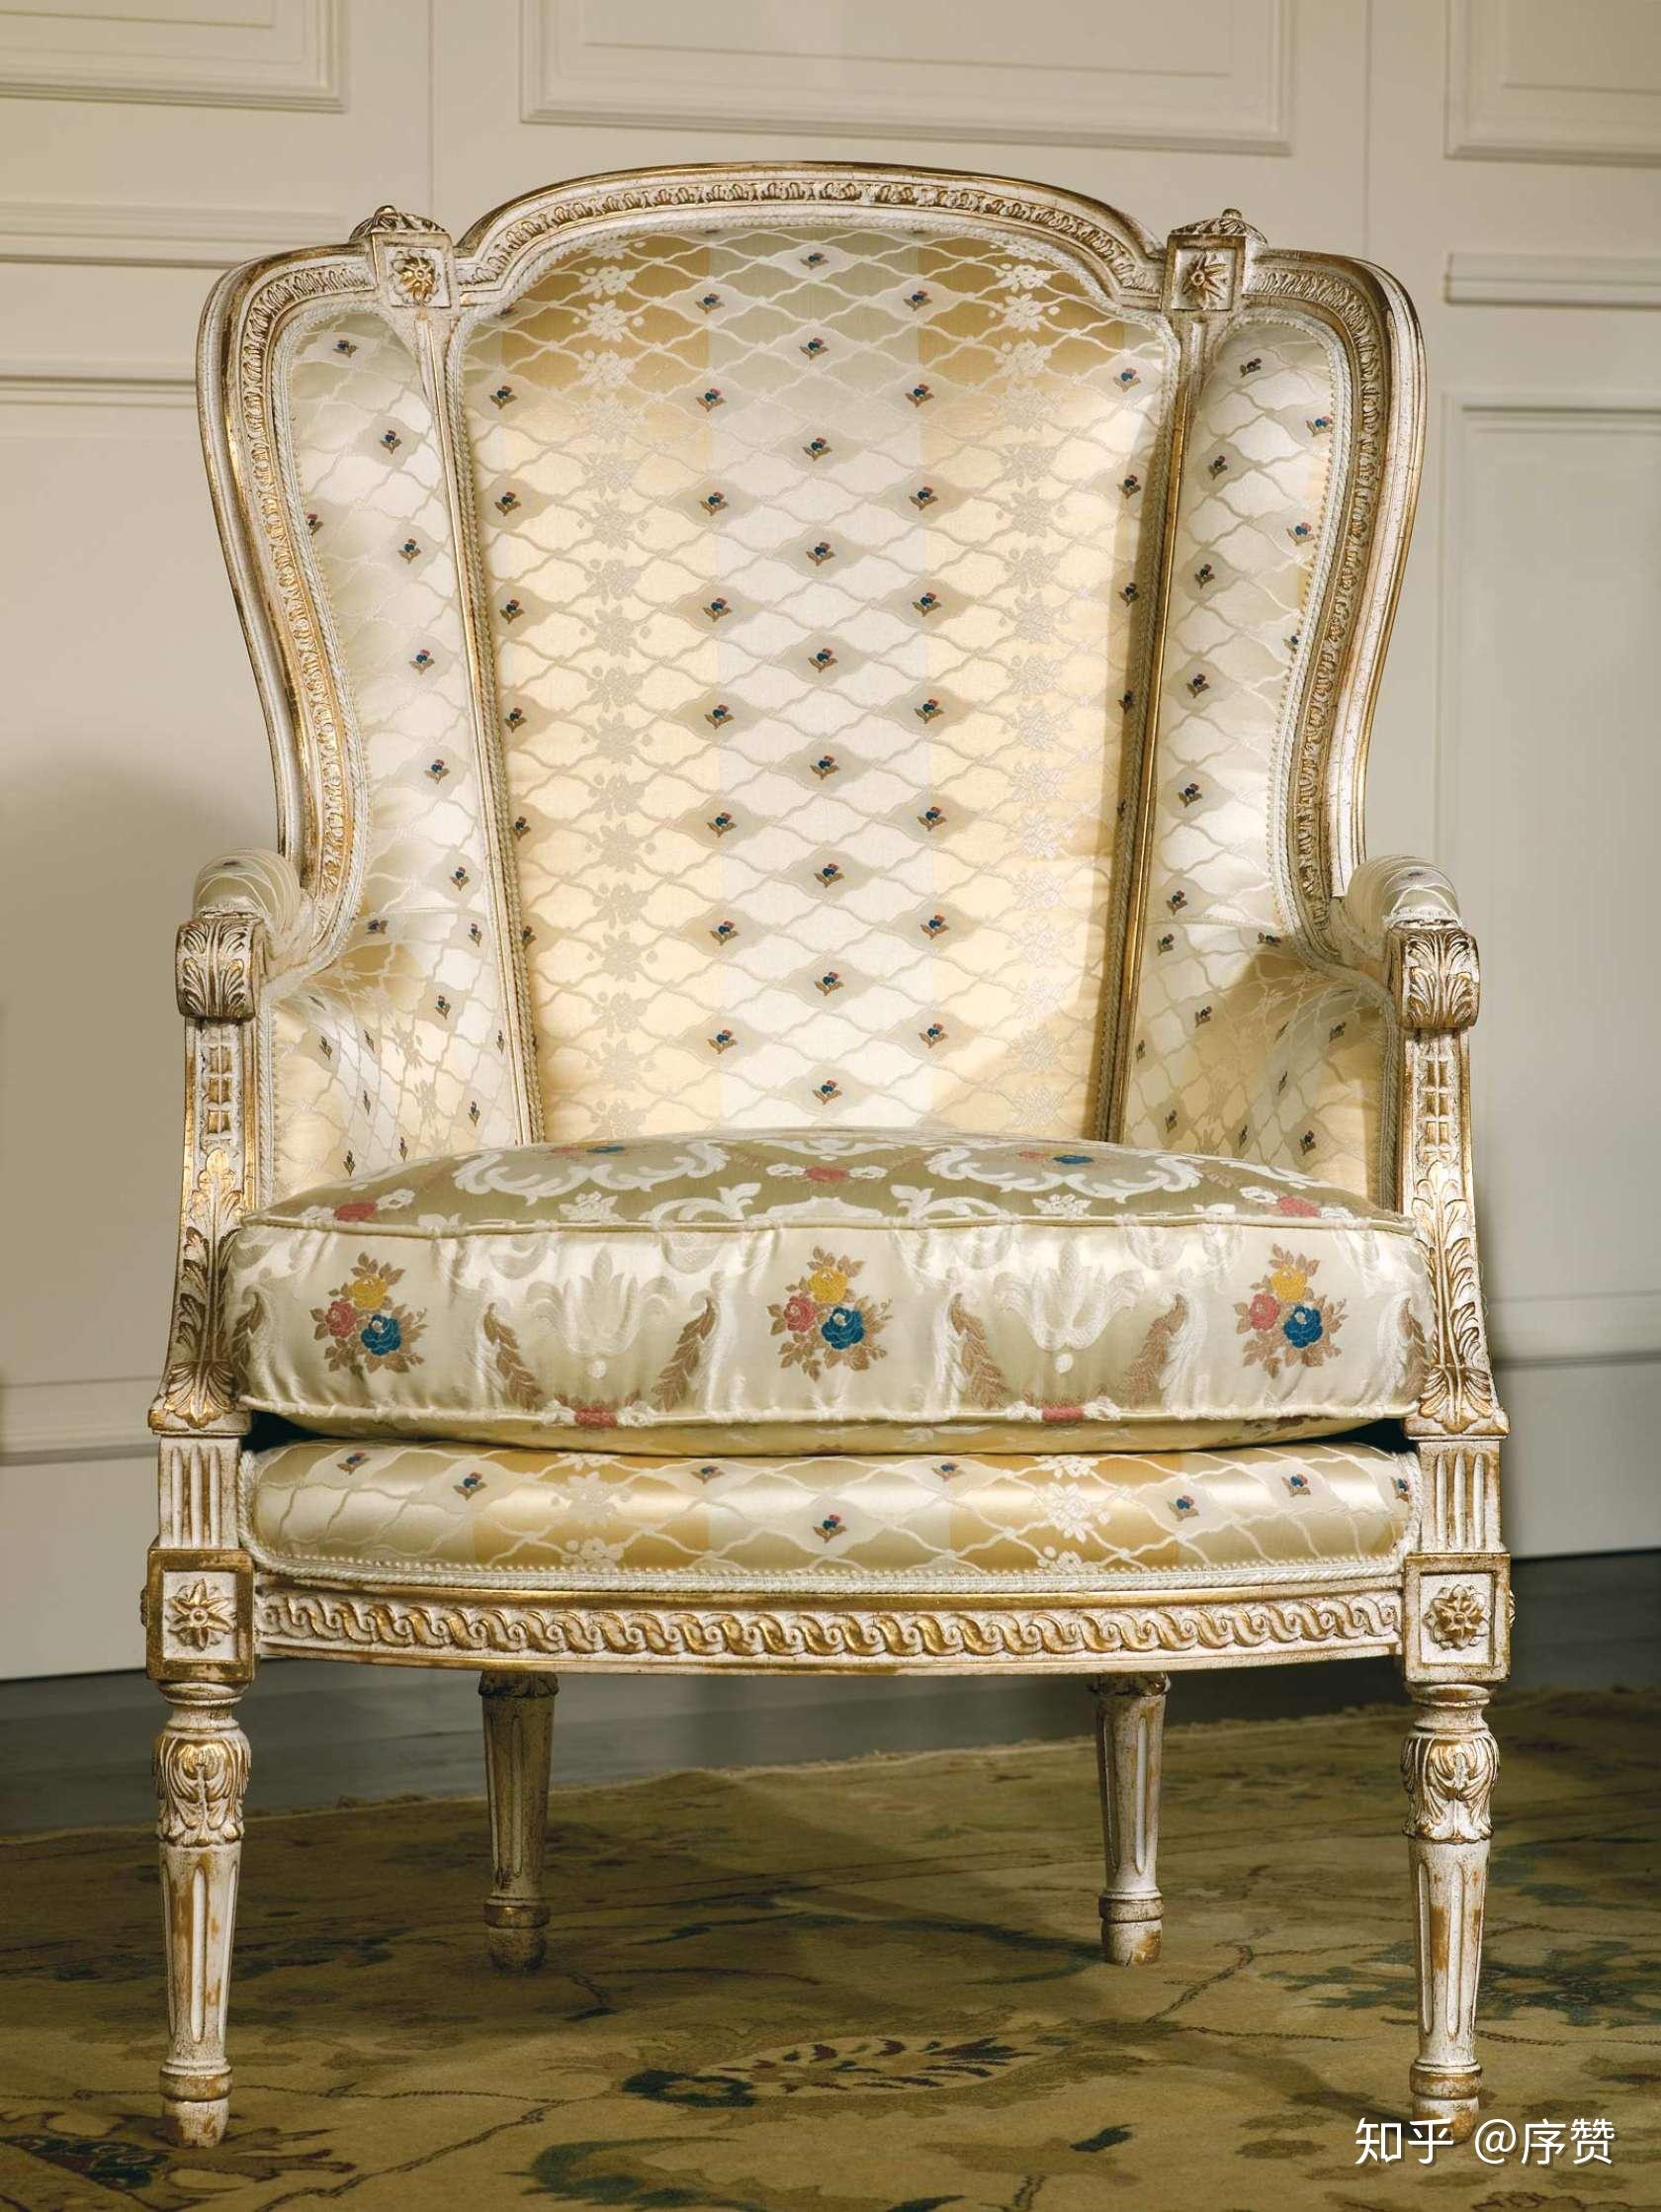 xv沙发真的很奢侈,看起来直接来自18世纪最美丽的贵族宫殿,这款沙发